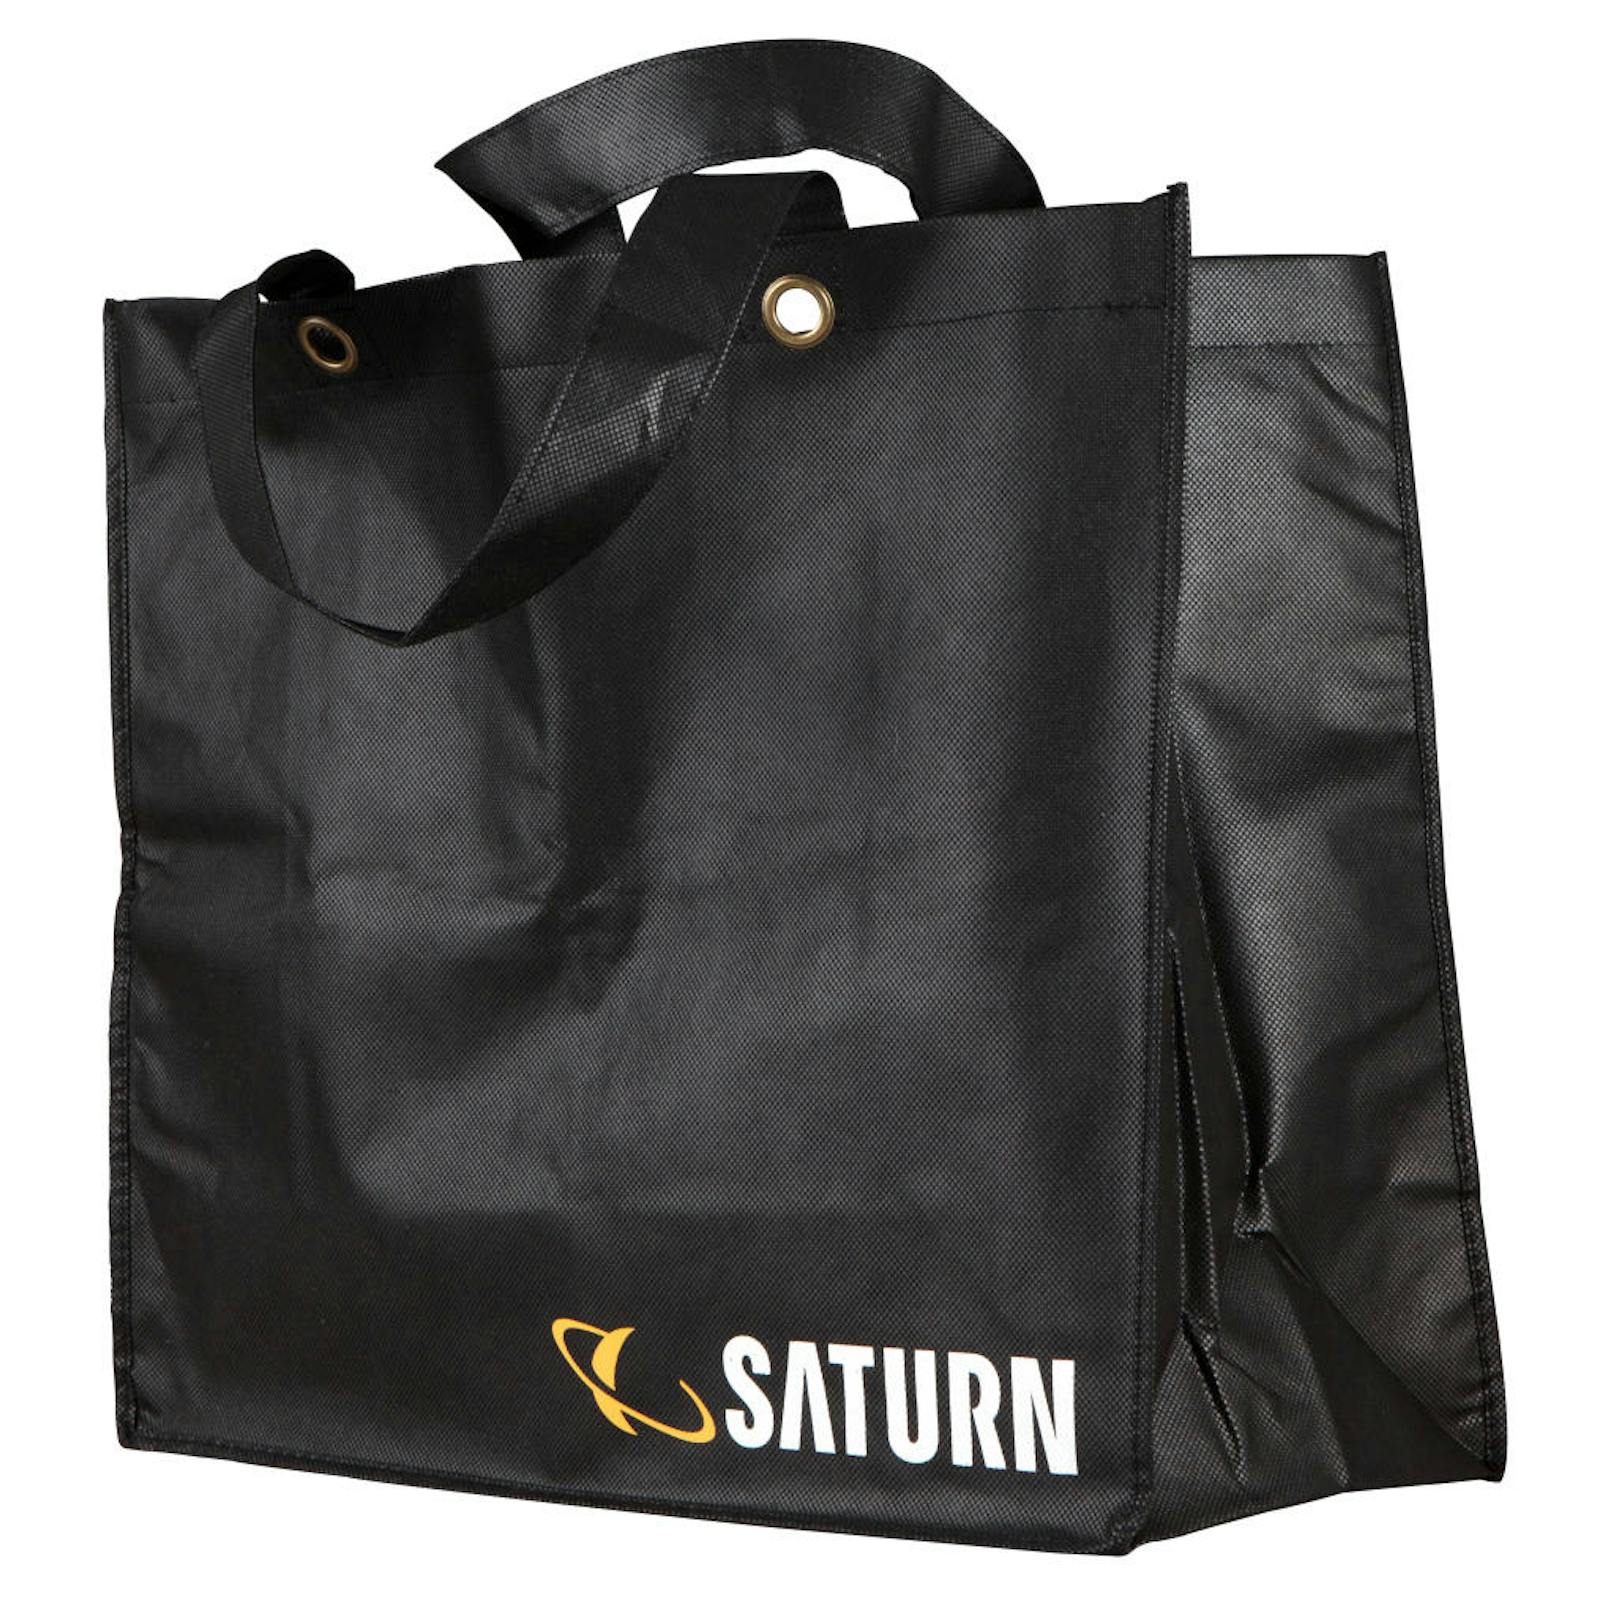 Bei Saturn in ganz Österreich sind ab sofort keine Plastiktragetaschen mehr erhältlich. Sie werden durch Mehrzweck-Gewebetaschen ersetzt, die für ein kleines Entgelt erhältlich sind. Sie sind in vier Größen erhältlich: die kleinste Tasche im Format 35x25cm wird für 0,50 Euro angeboten, das größte Format mit 50x35cm ist für 1 Euro erhältlich. Weiters sind Taschen in der mittleren Größe 43x40cm für 0,70 Euro verfügbar. Zusätzlich wird für Kunden der Saturn Mobile Shops eine Tasche im Format 36x30cm sogar kostenlos zur Verfügung gestellt. 